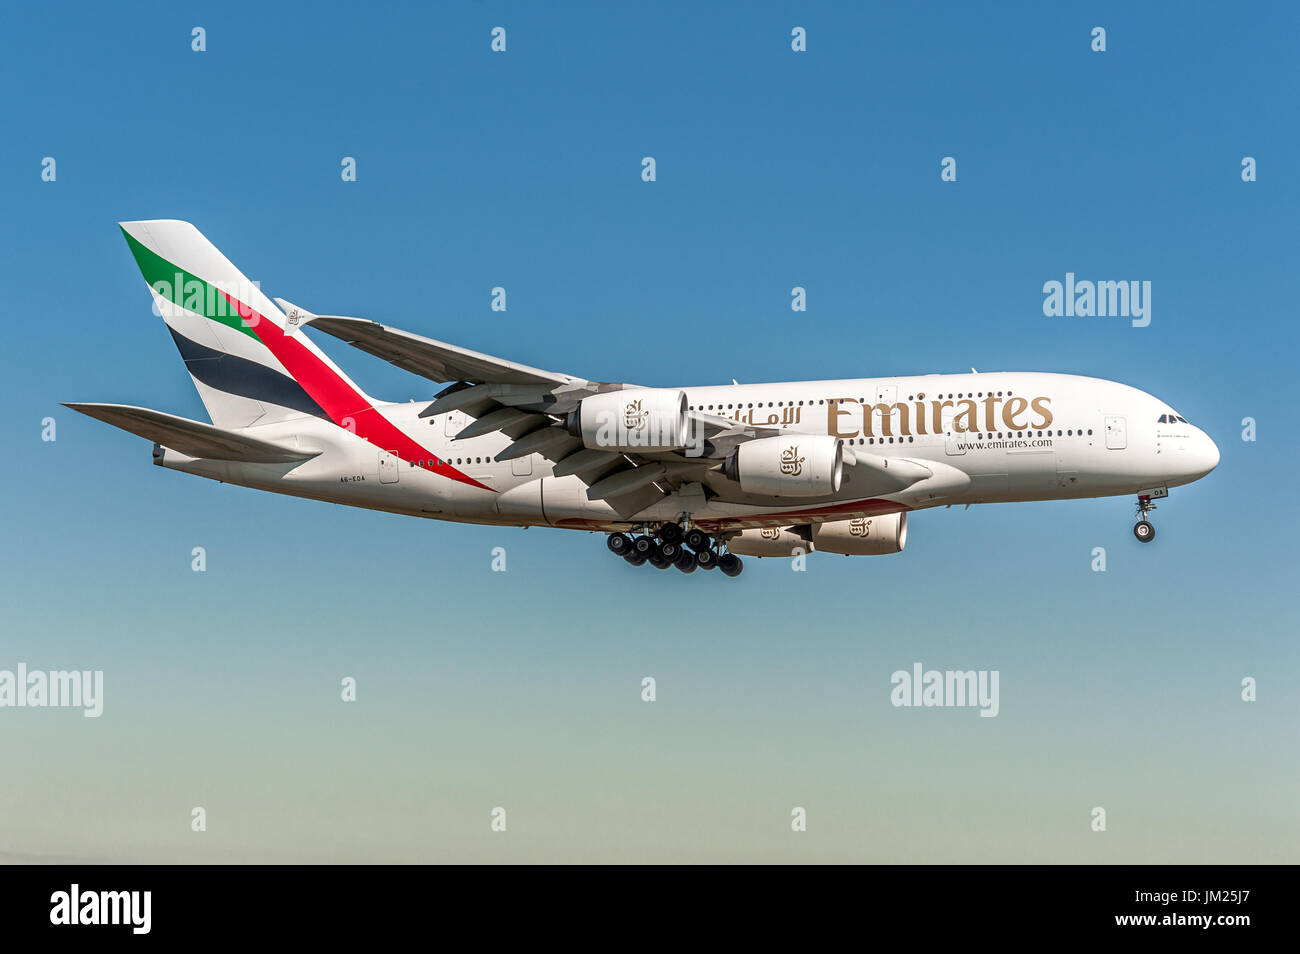 Emirates Airline Airbus A380 der Landung am Flughafen Zürich Kloten,  Schweiz. Größte liner Flugzeug der Welt. 4 Jet Engine und 2 Schichten für  den Beifahrer Stockfotografie - Alamy